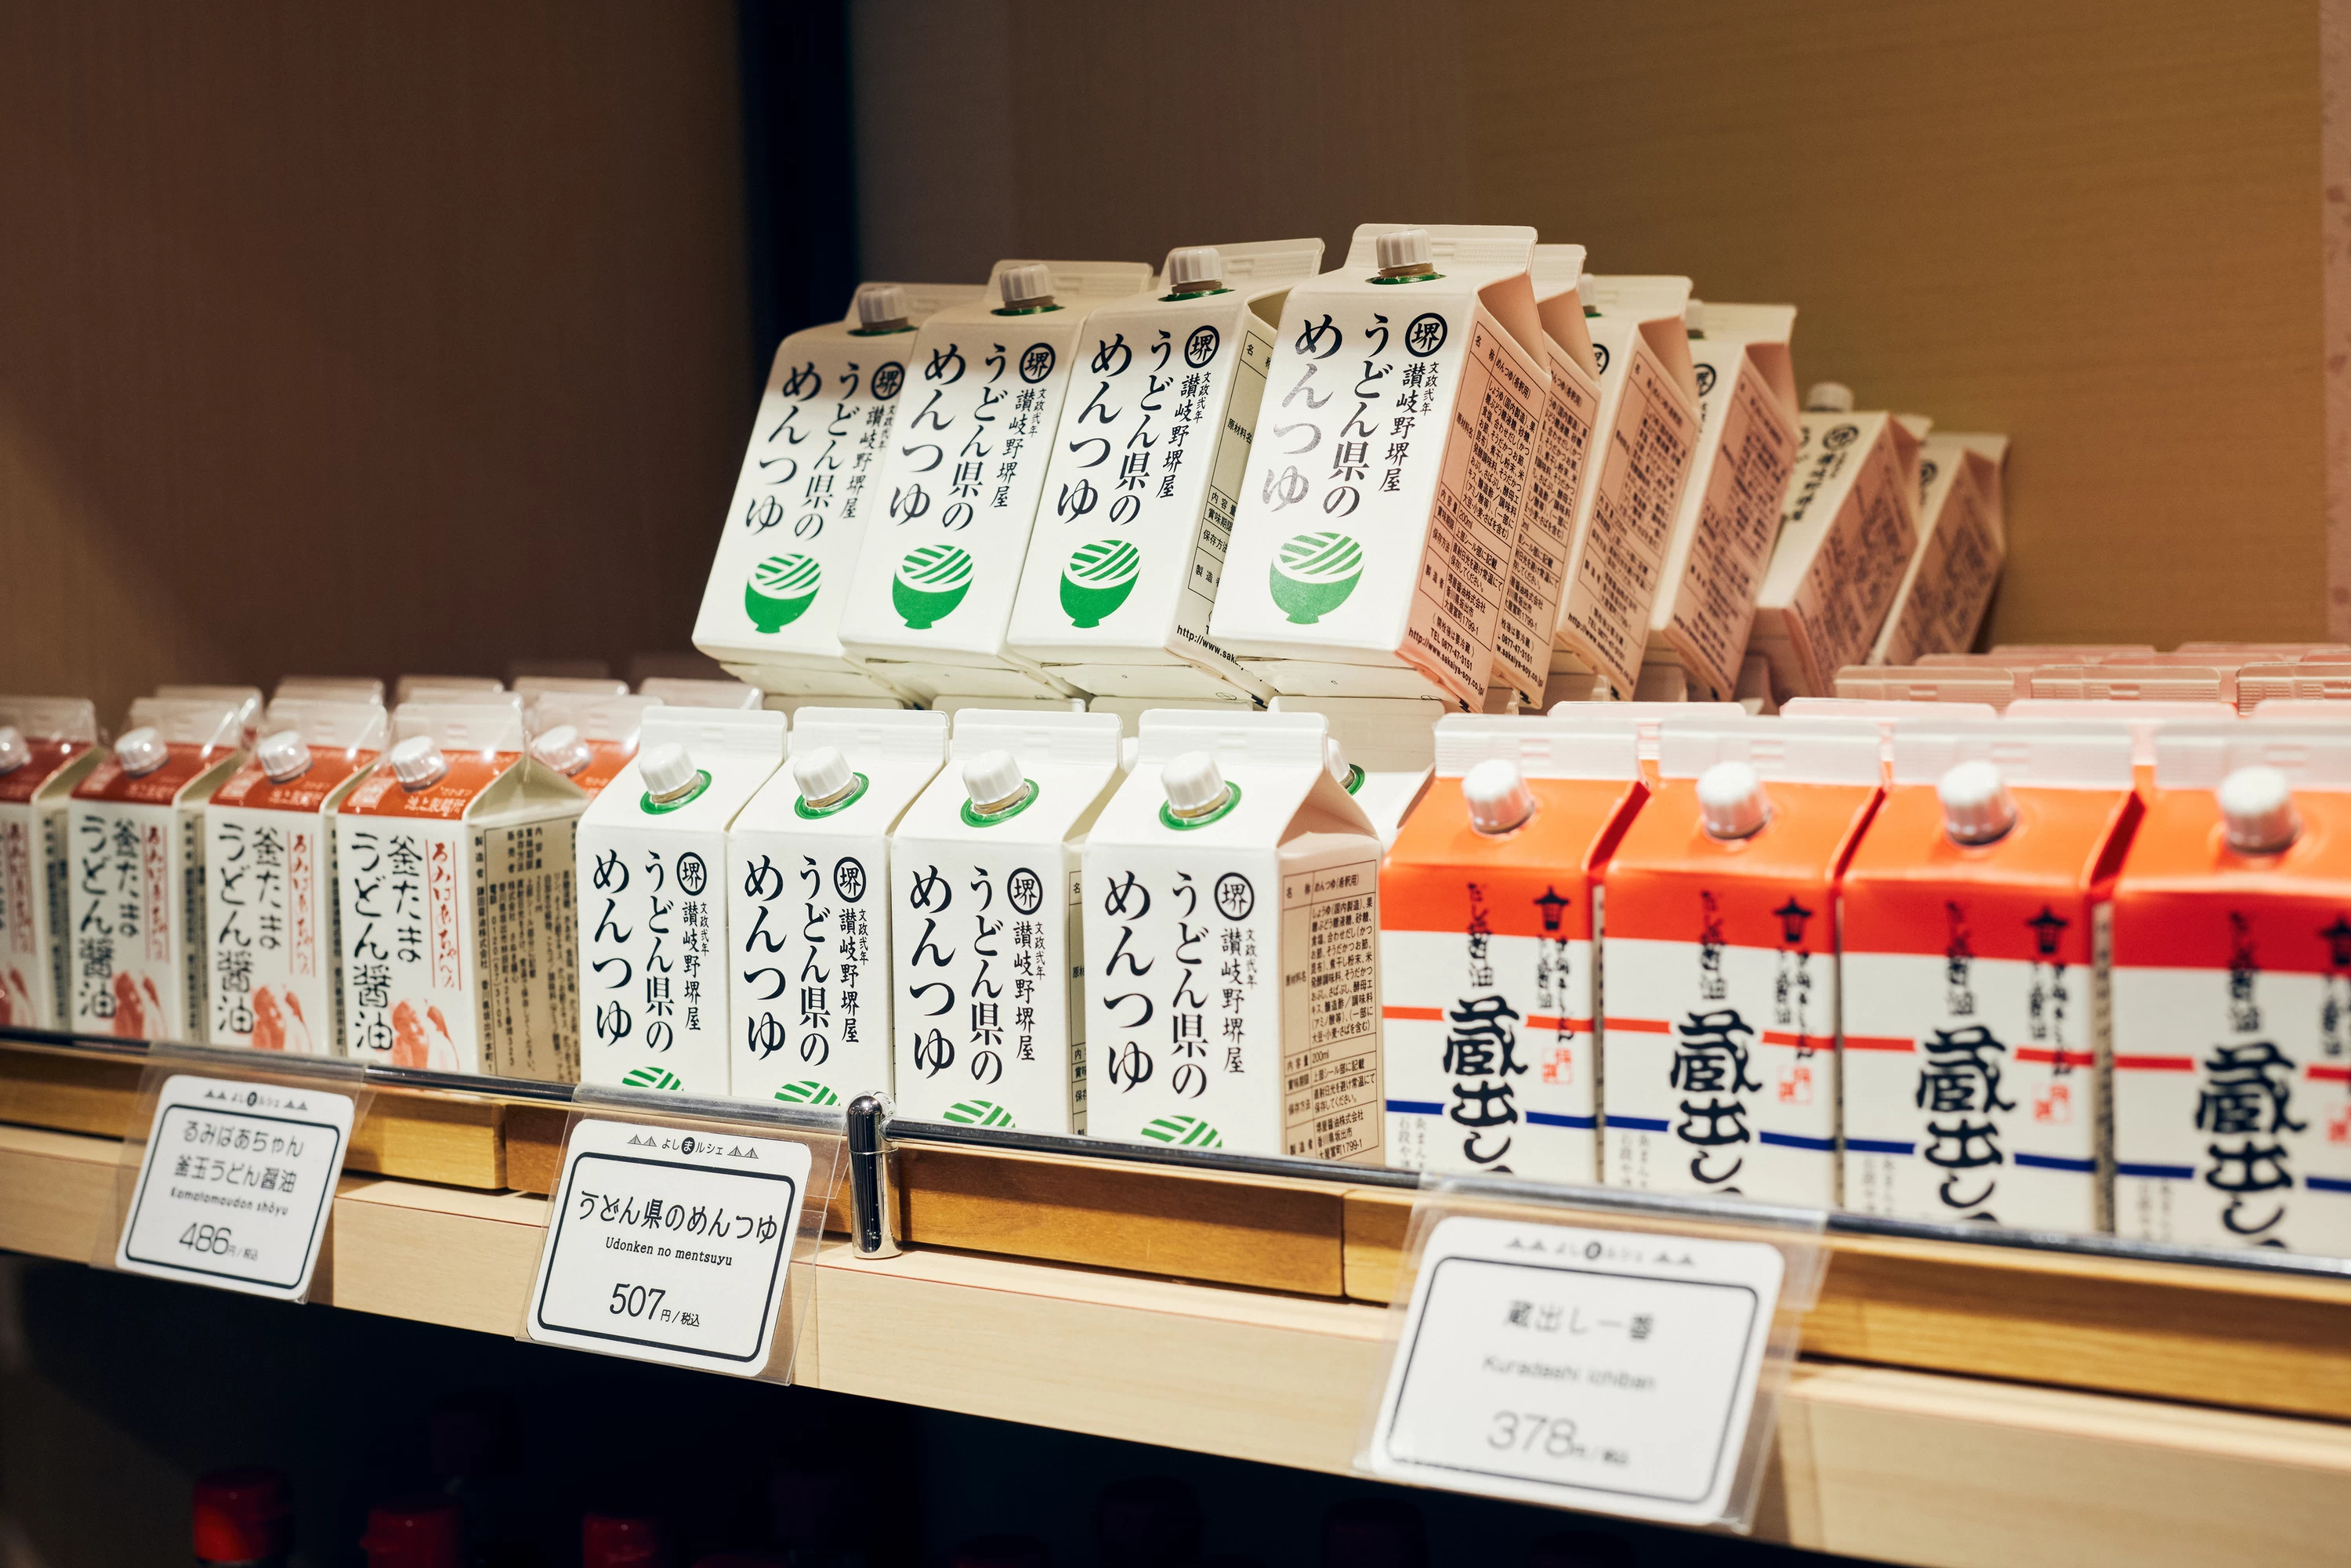 坂出土産の定番、左から「鎌田醤油」と「堺屋醤油」。右は琴平町にある「京兼醸造」の醤油のアレンジ商品